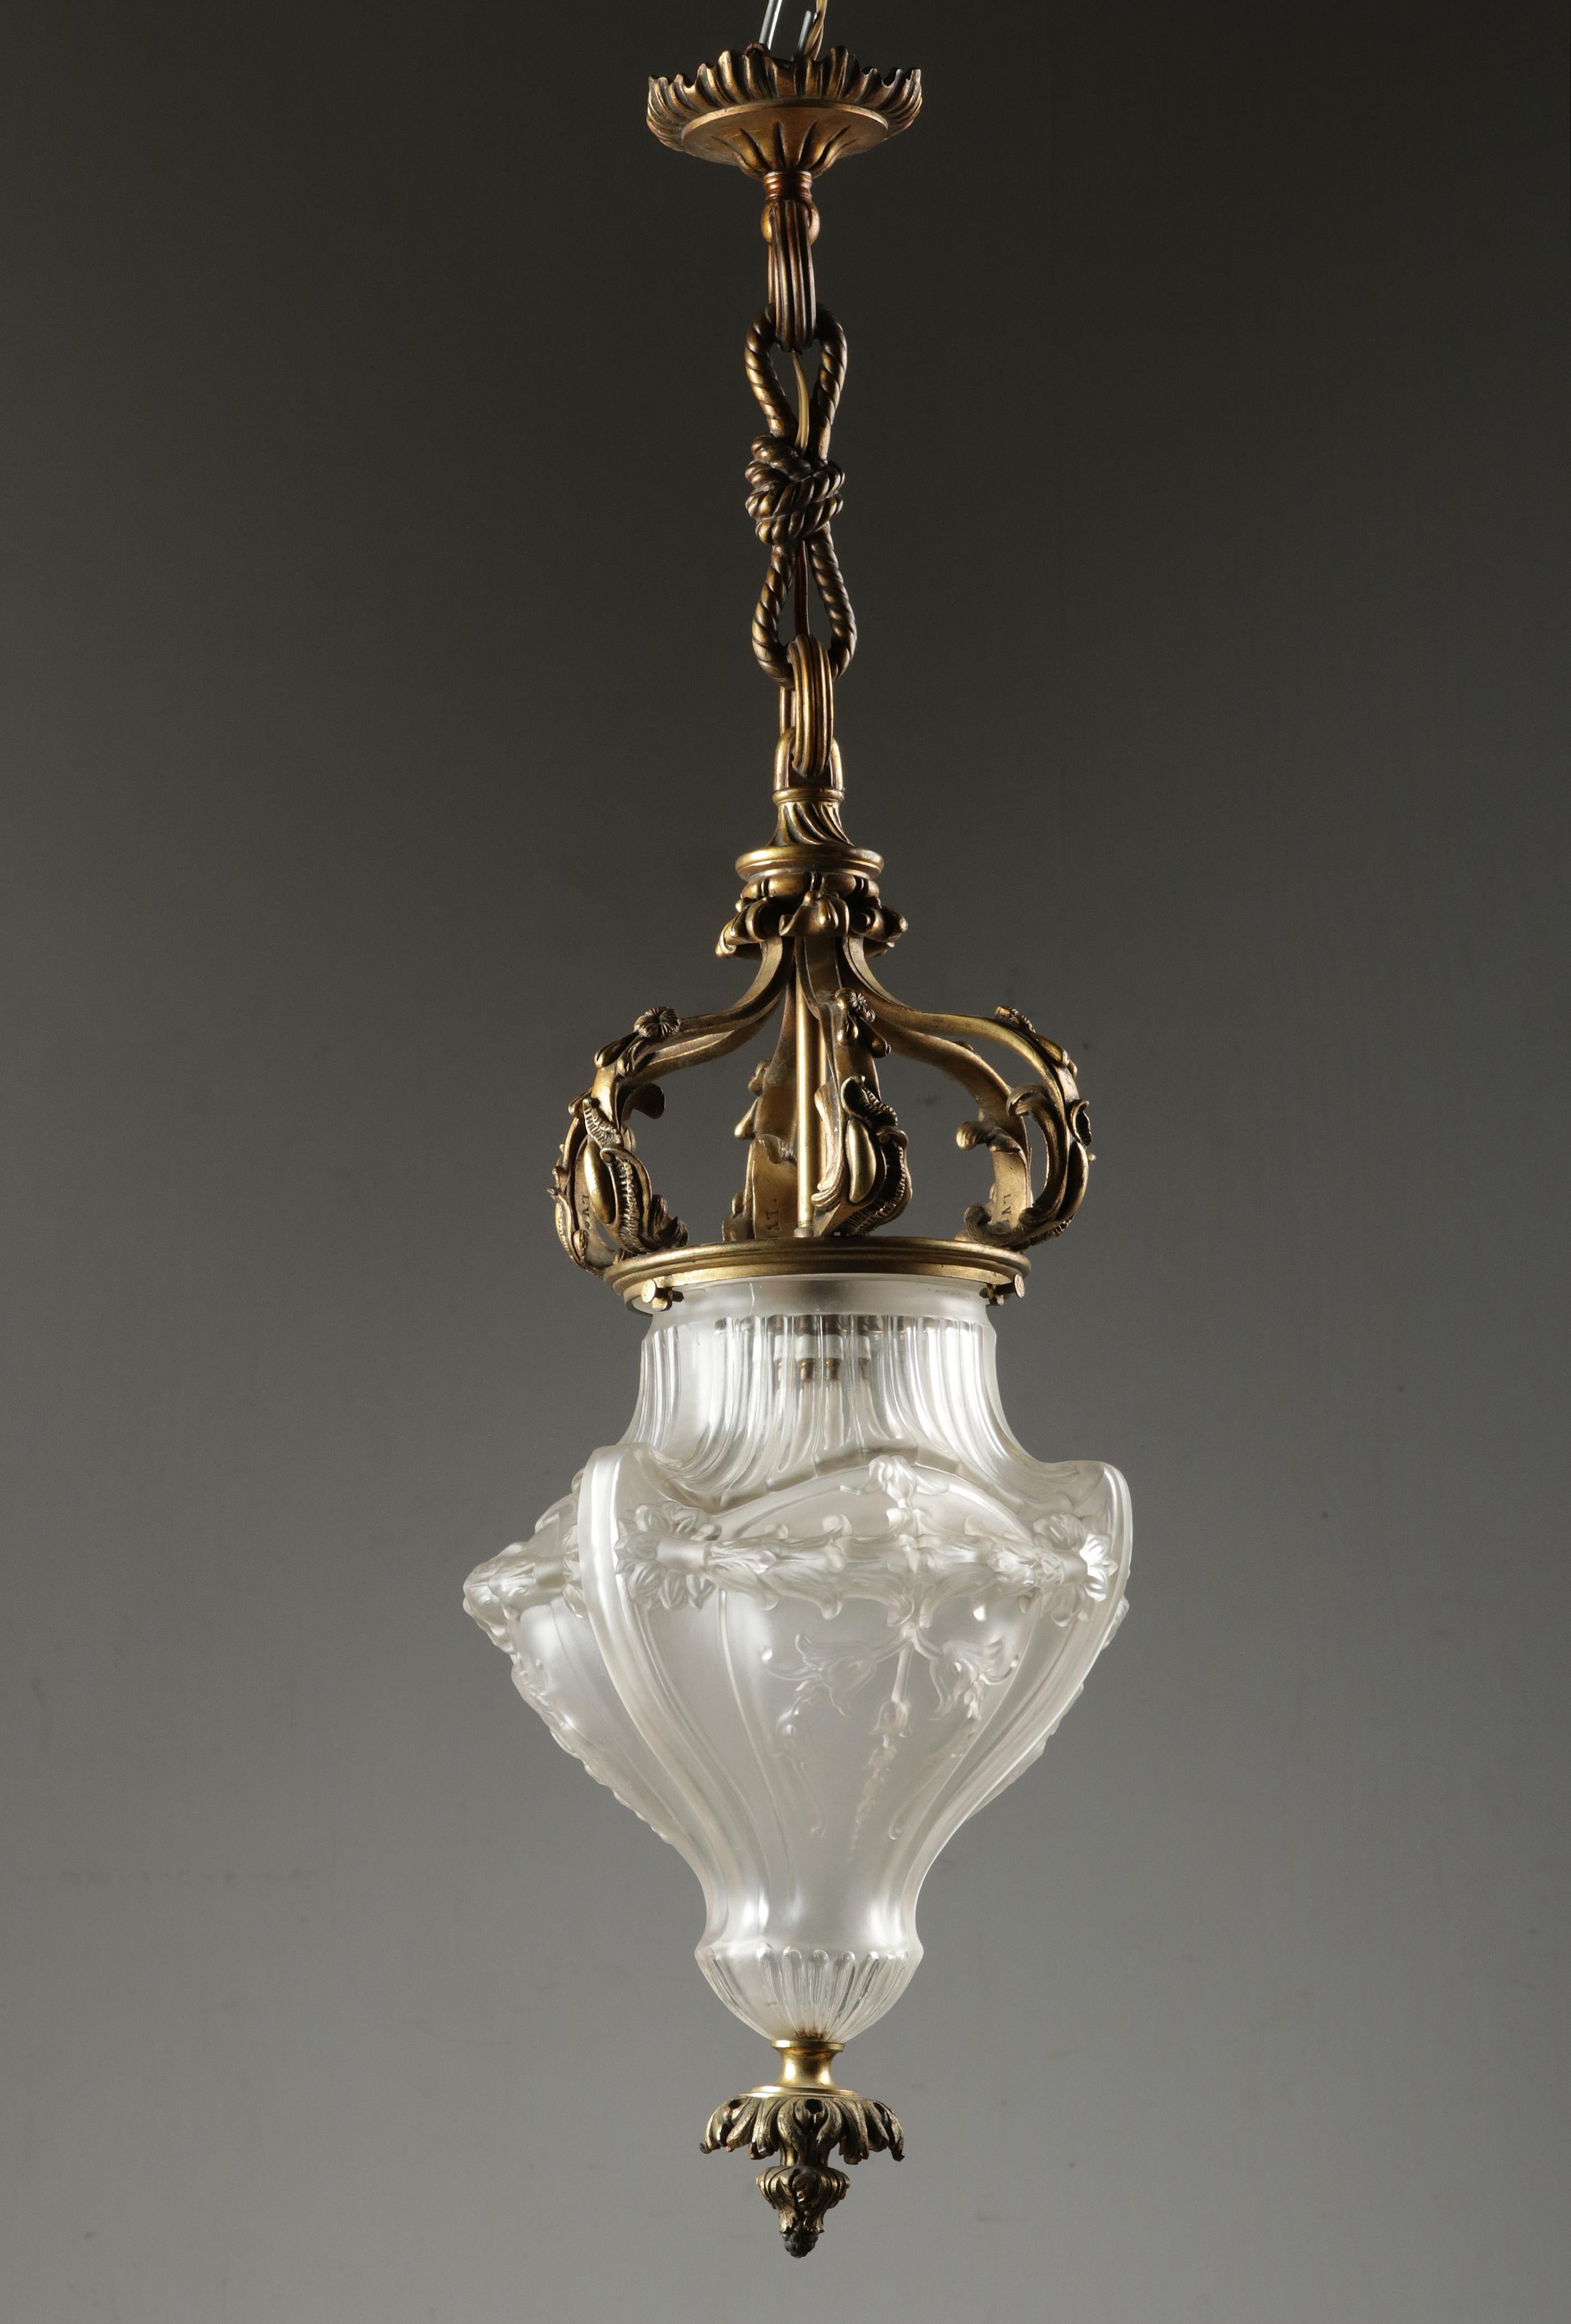 Une élégante lanterne antique / lampe de couloir. Le luminaire en forme de couronne est entièrement réalisé en bronze coulé. L'abat-jour est en verre moulé, avec des motifs floraux. Intérieur d'une lampe avec un raccord E27. L'abat-jour est